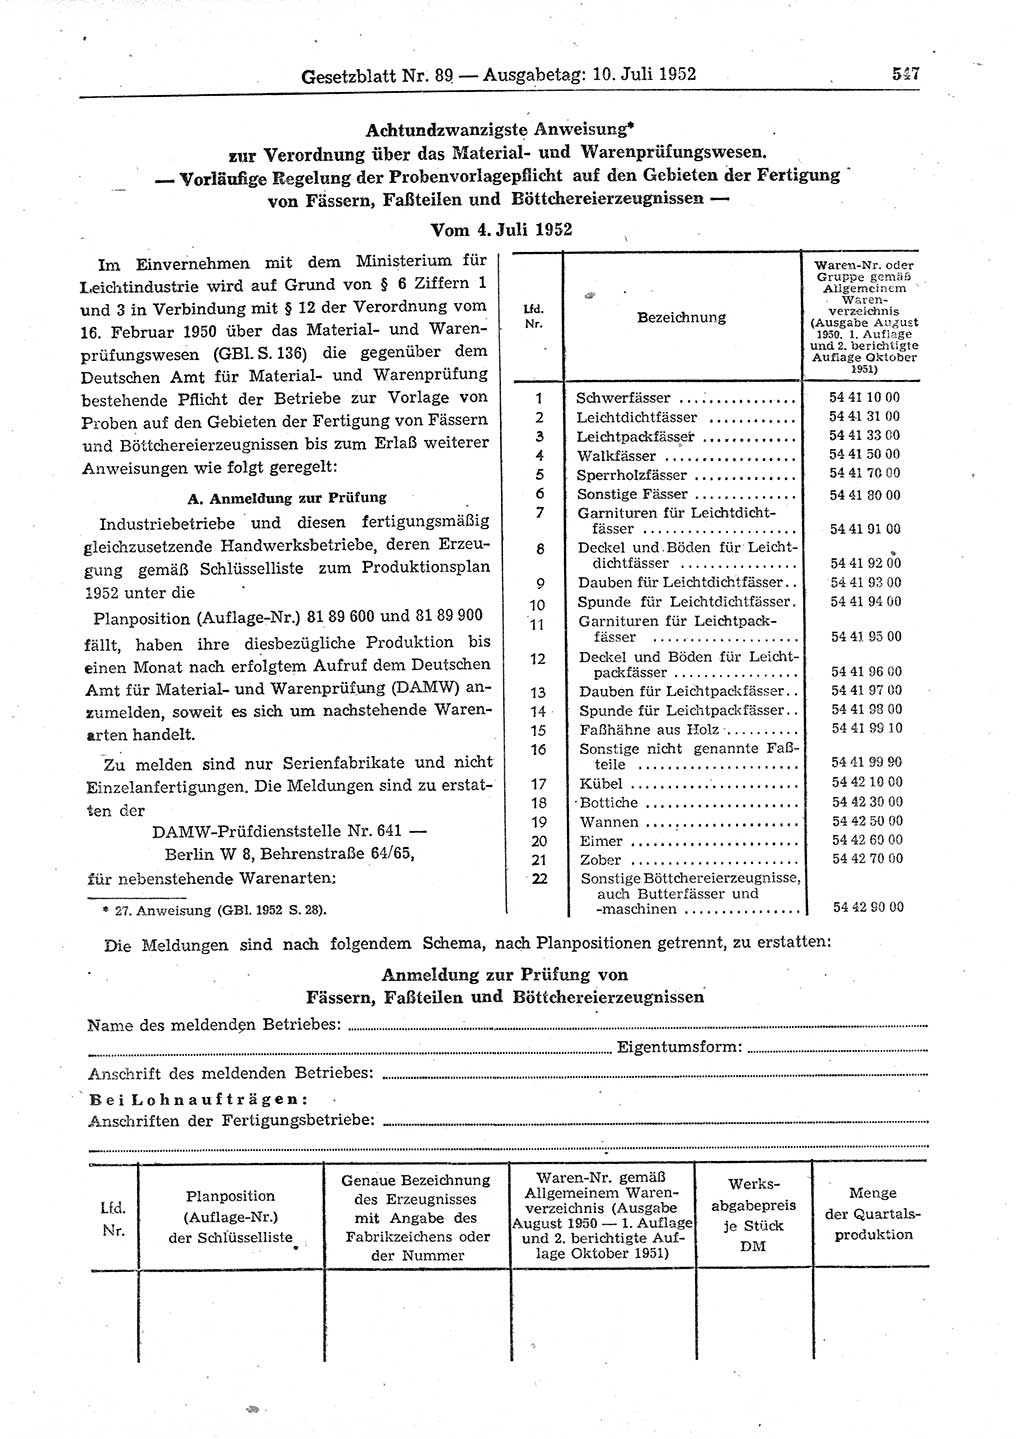 Gesetzblatt (GBl.) der Deutschen Demokratischen Republik (DDR) 1952, Seite 547 (GBl. DDR 1952, S. 547)